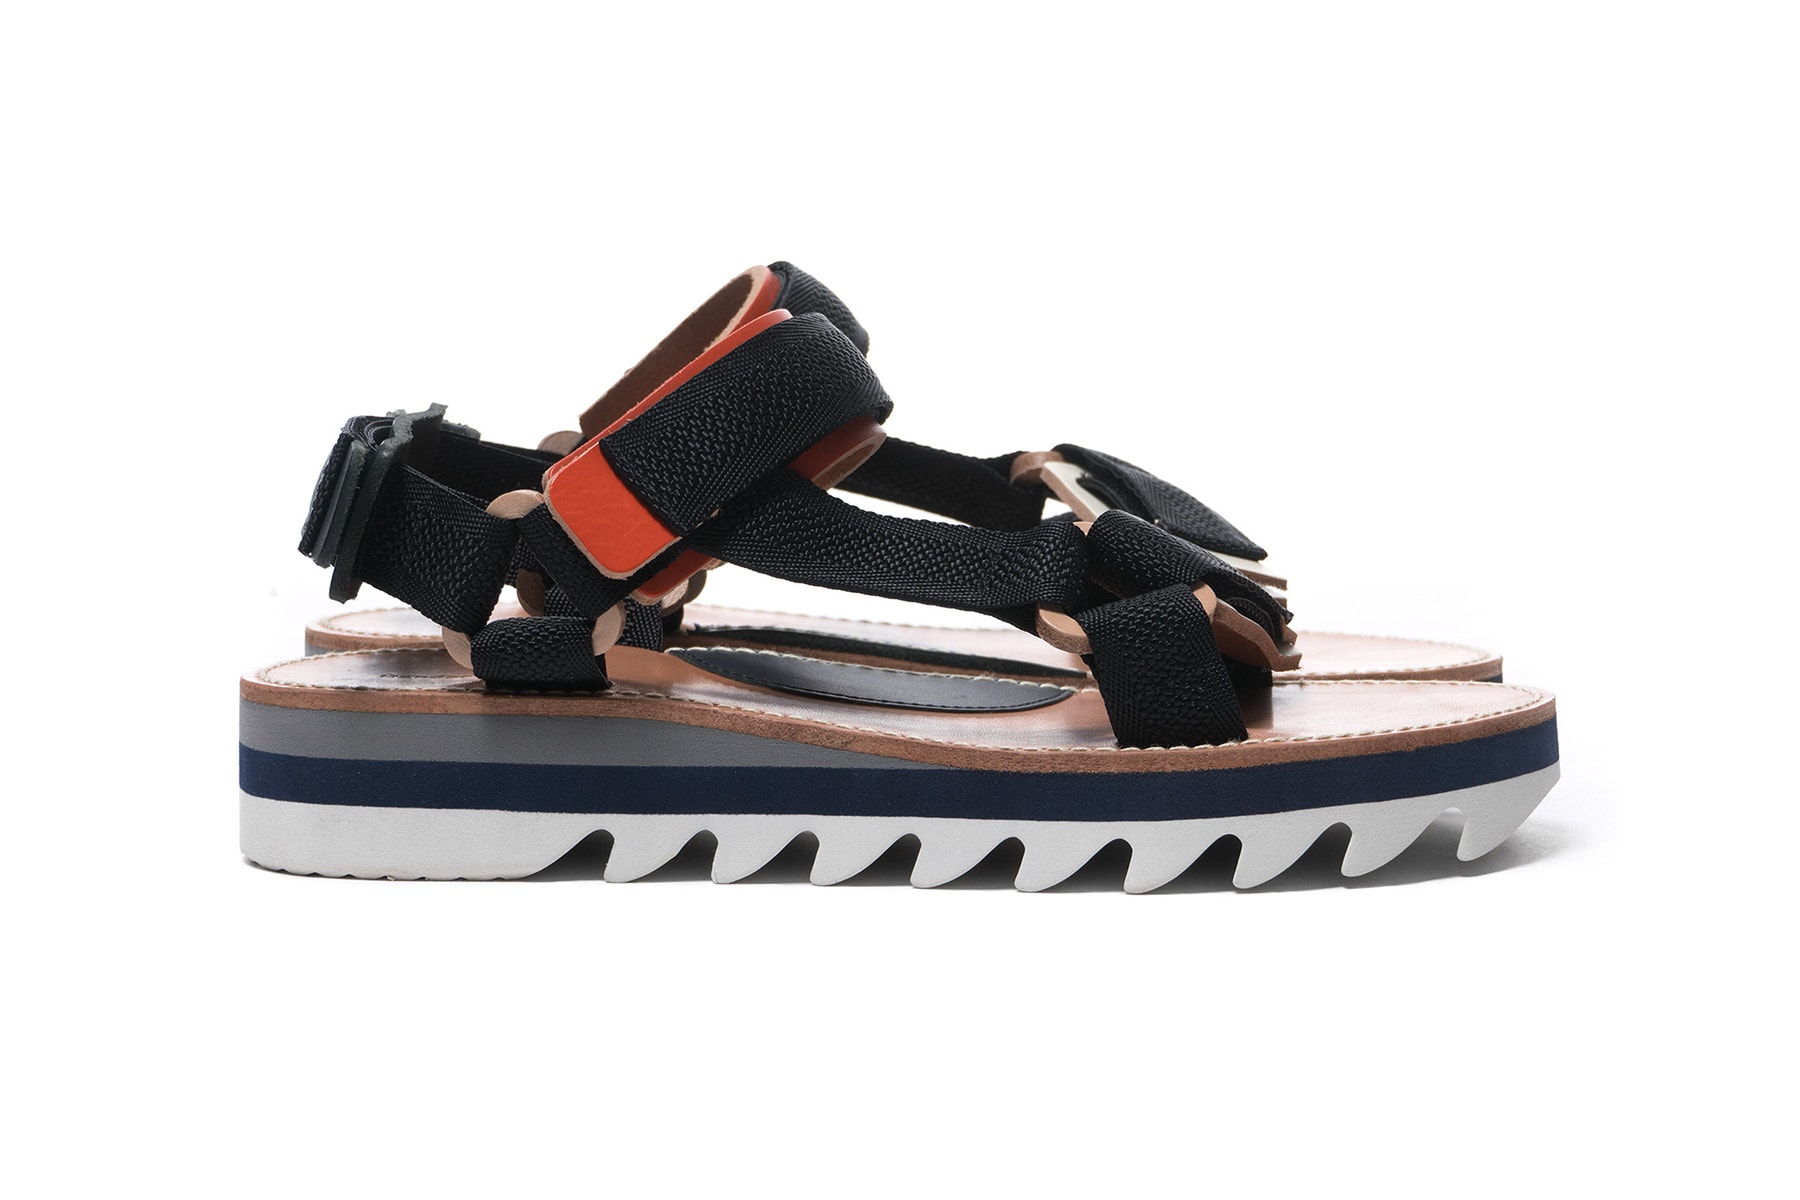 Hender Scheme spring summer 2018 Ryo Kashiwazaki footwear slippers sandals leather accessories